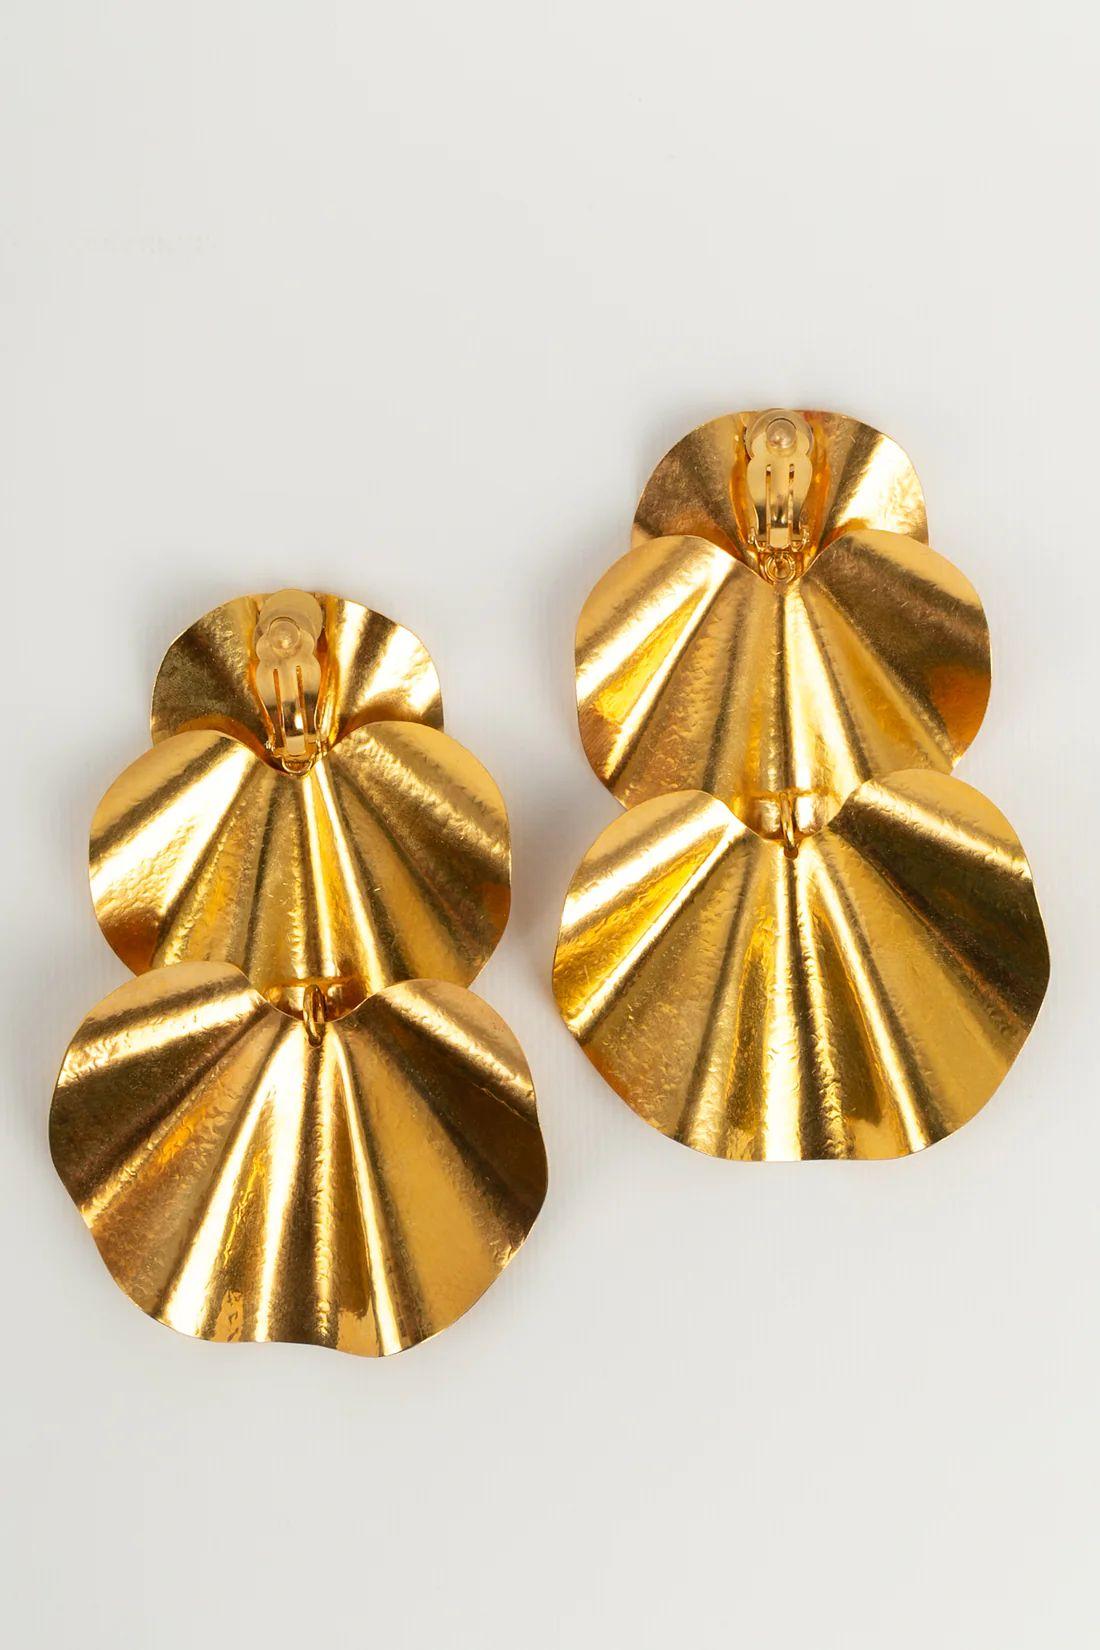 Artist Hervé Van Der Straeten Long Articulated Clip Earrings in Gold Metal